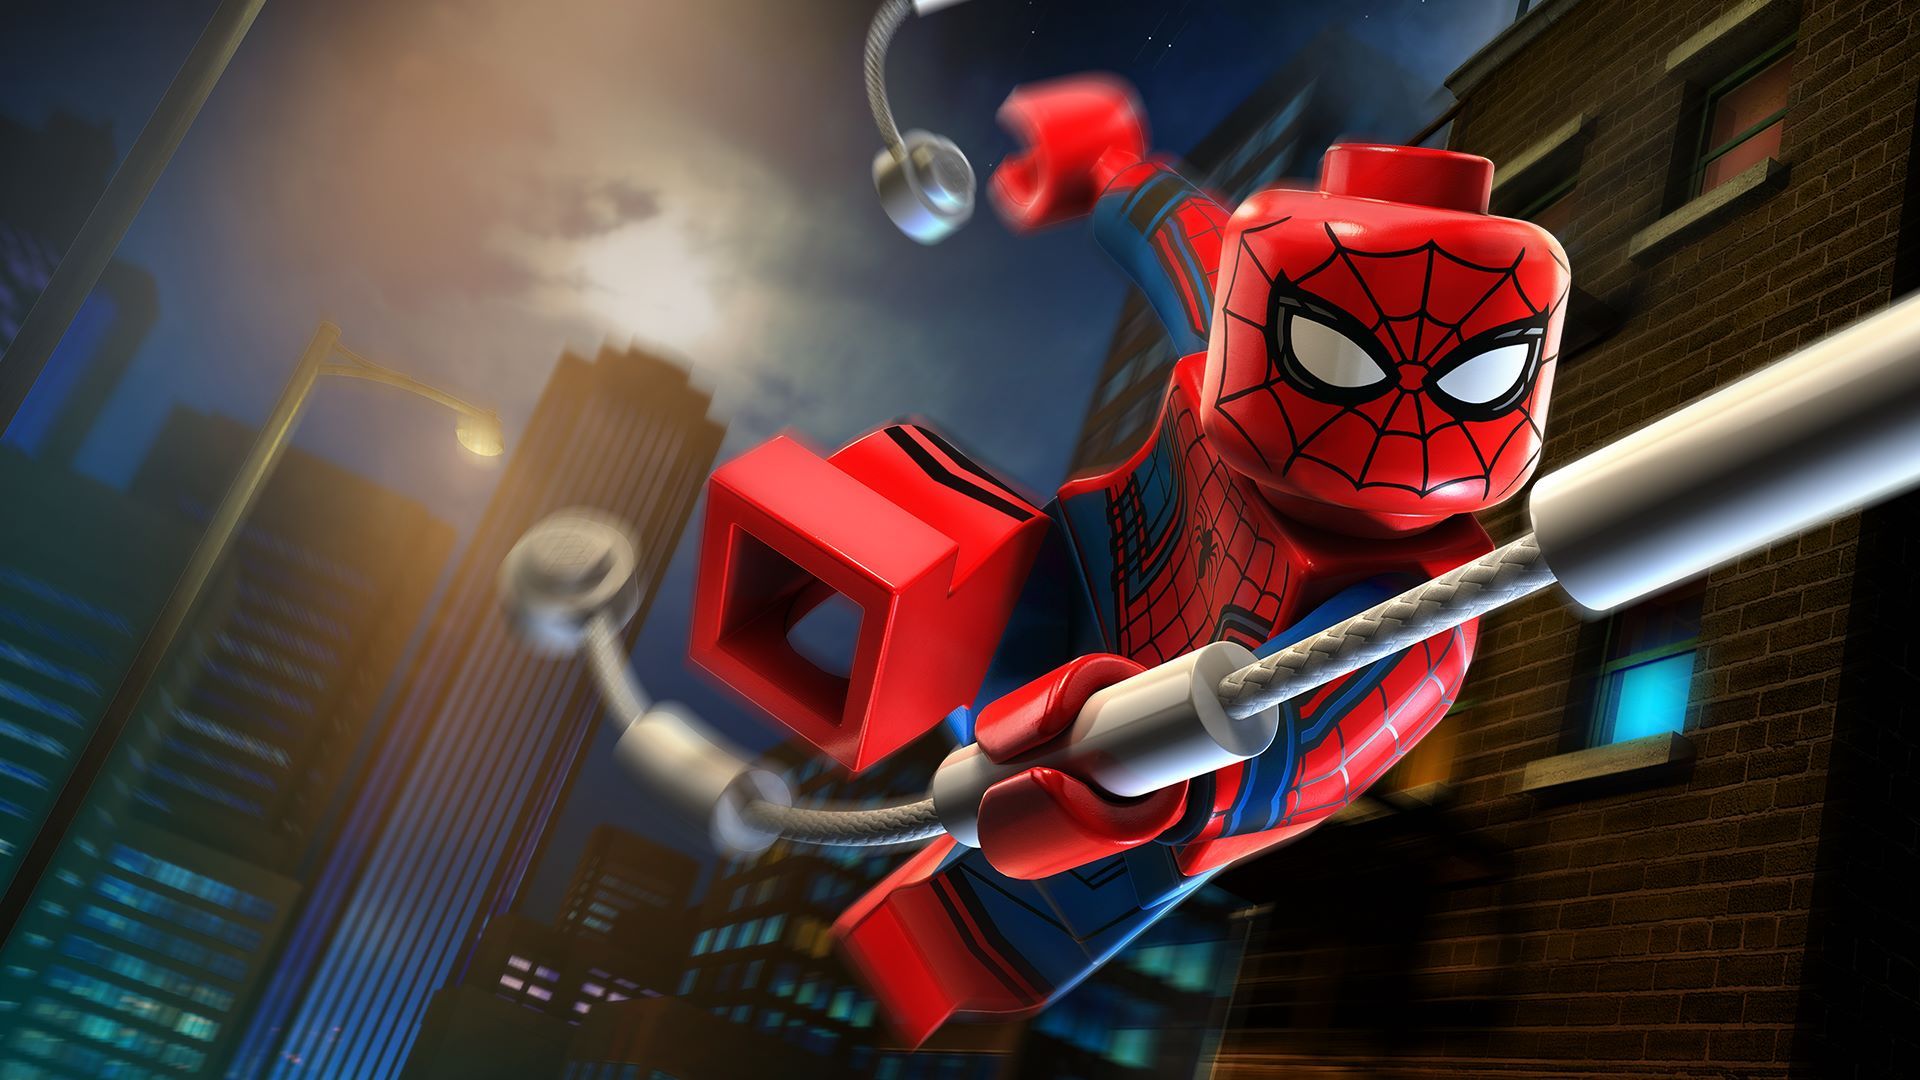 Spiderman ideas. spiderman, amazing spider, amazing spiderman